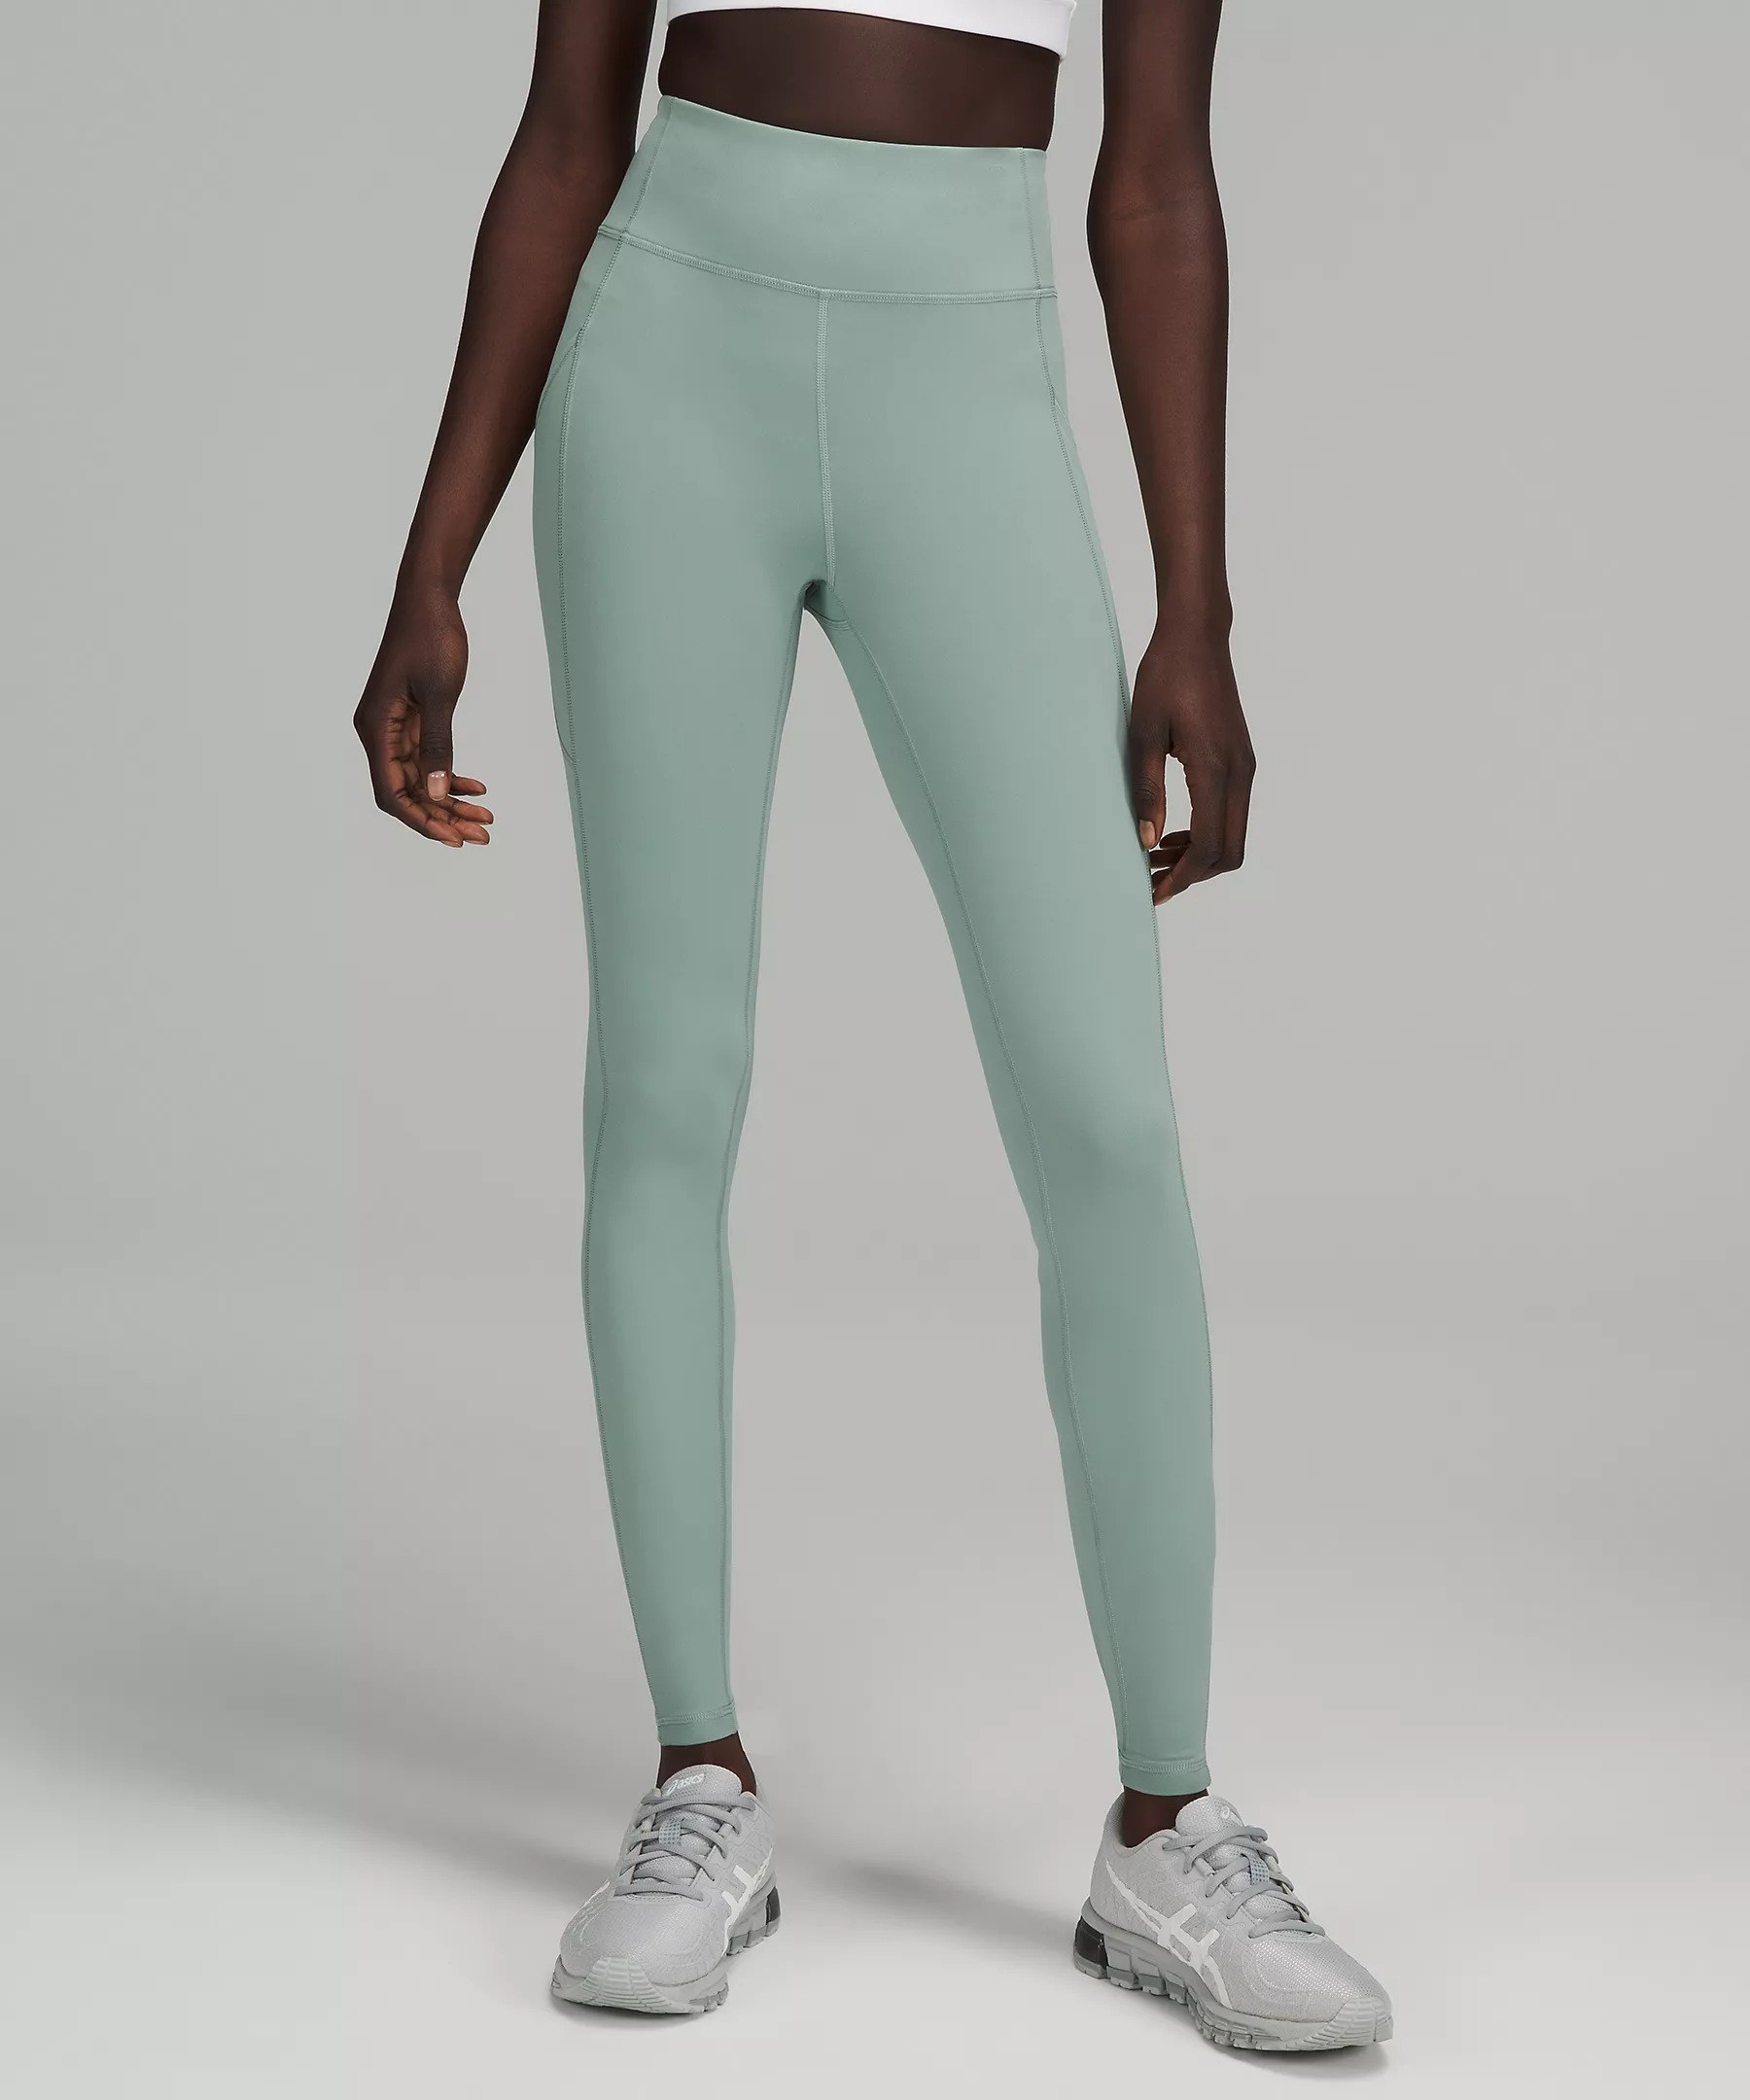 Model in green high rise leggings